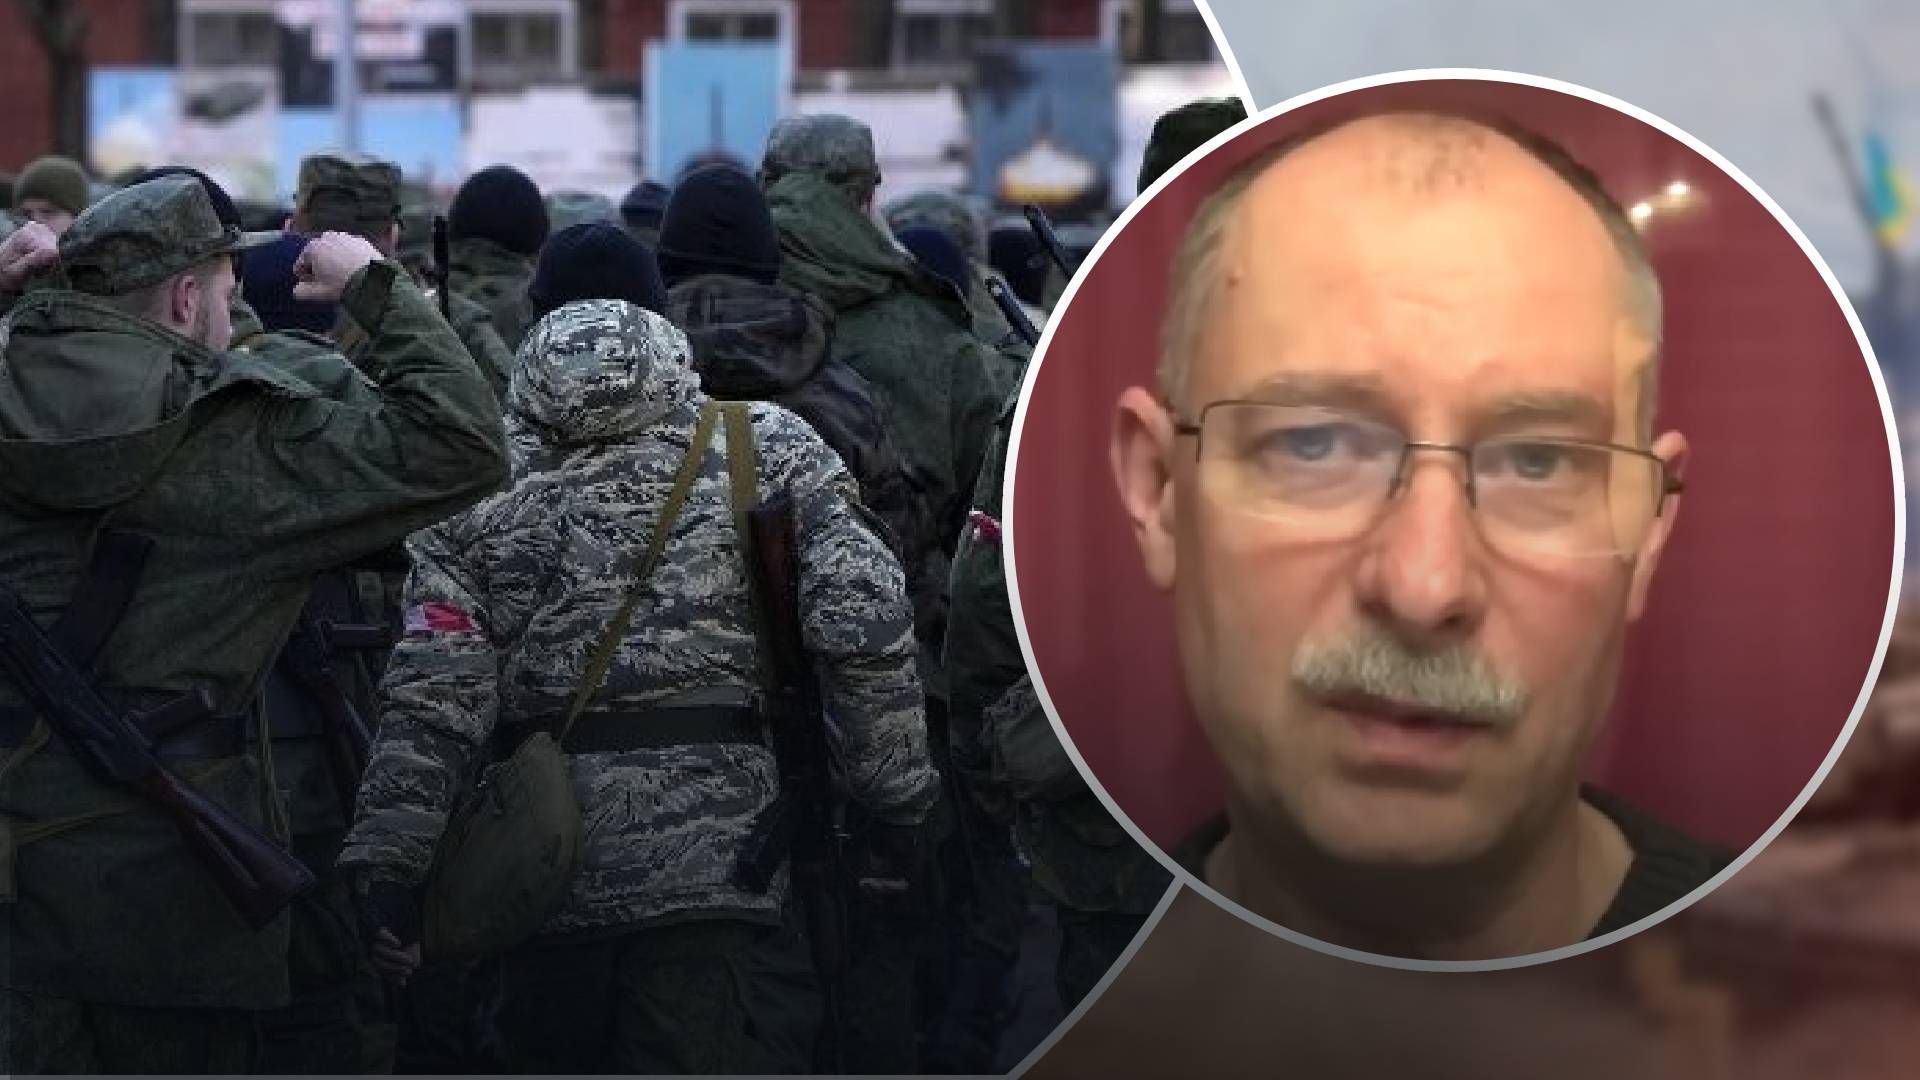 Россия бросит на войну еще одну частную военную компанию "Патриот": Жданов оценил угрозу